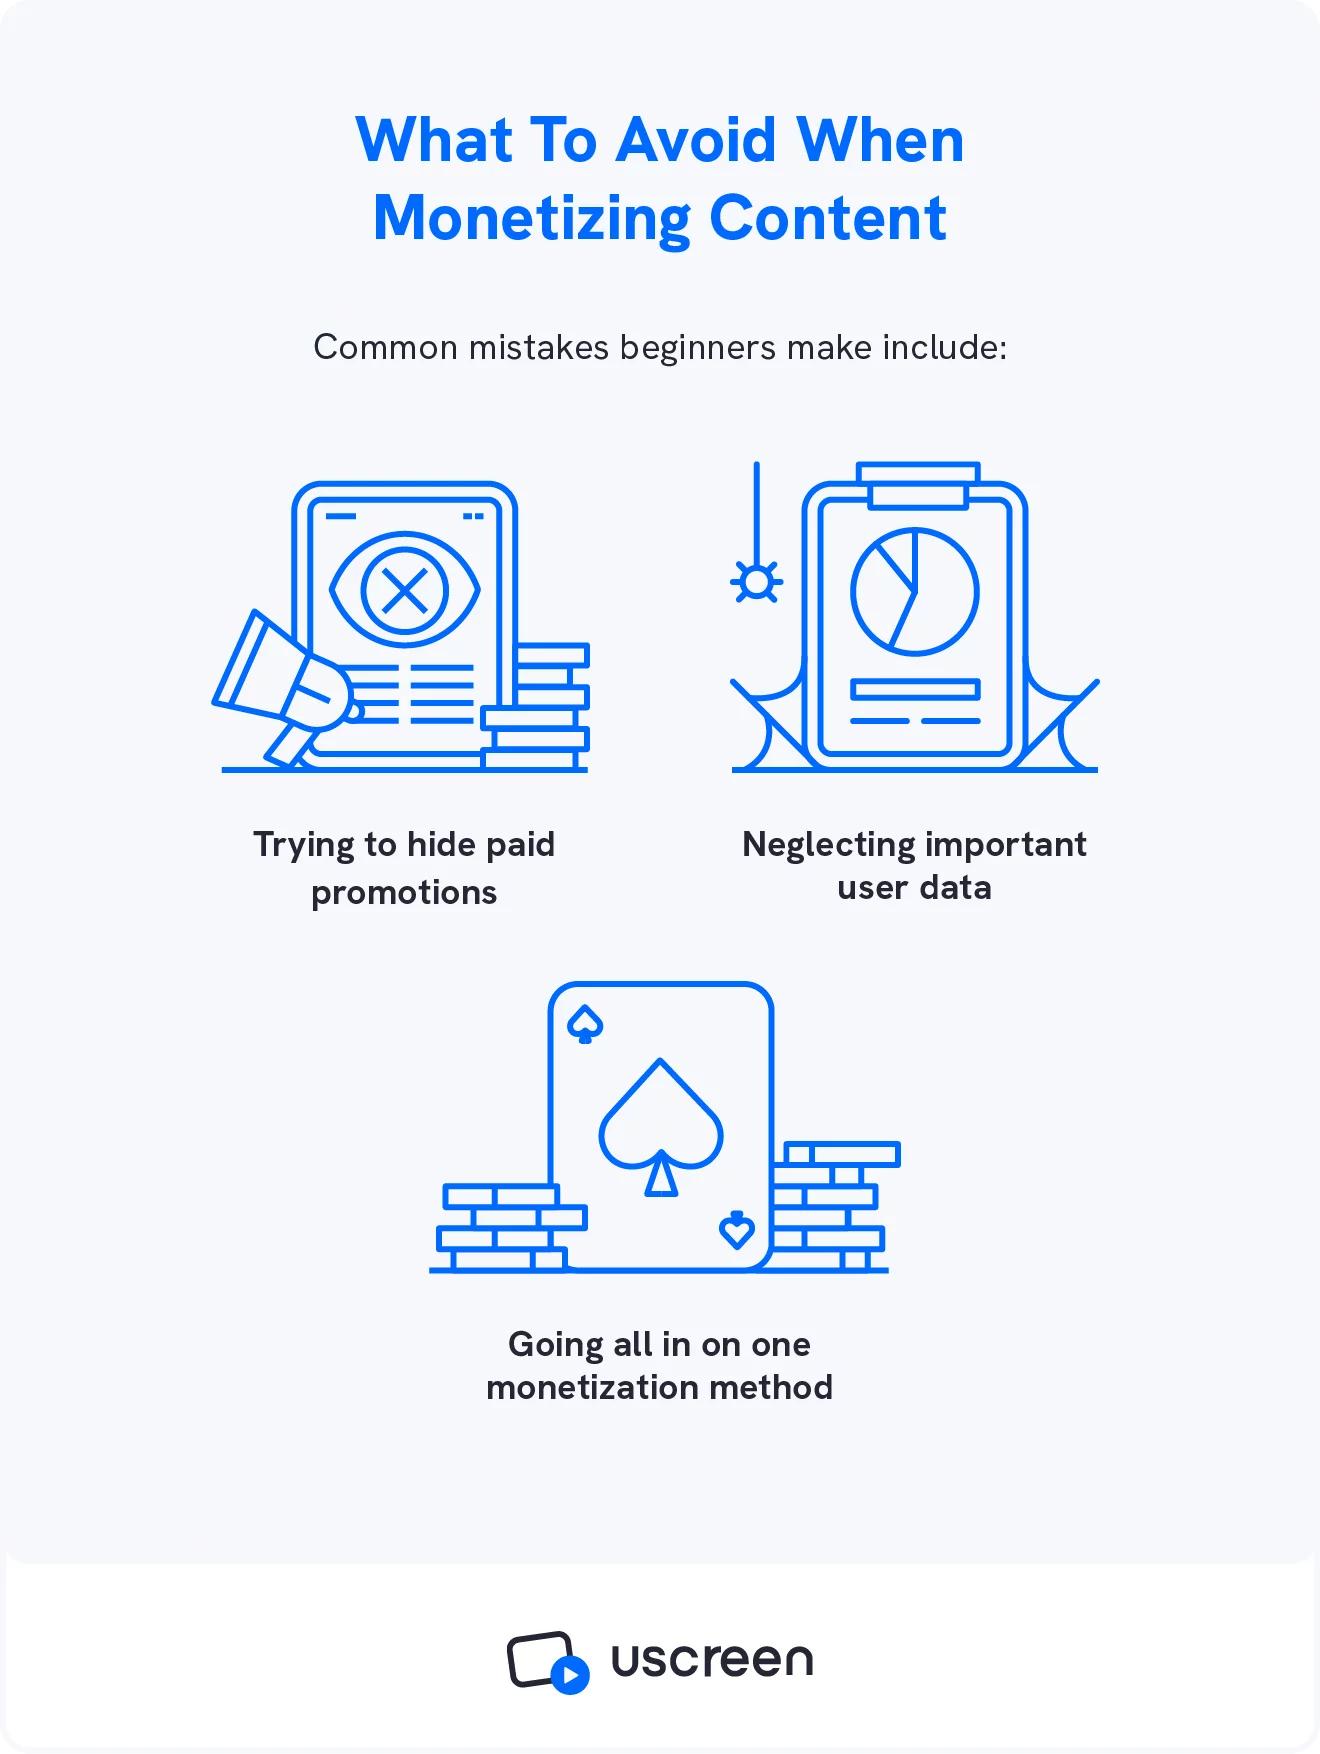 画像は、動画クリエイターが最初にコンテンツの収益化を開始するときに犯す 3 つの主要なコンテンツ収益化の間違いを示しています。